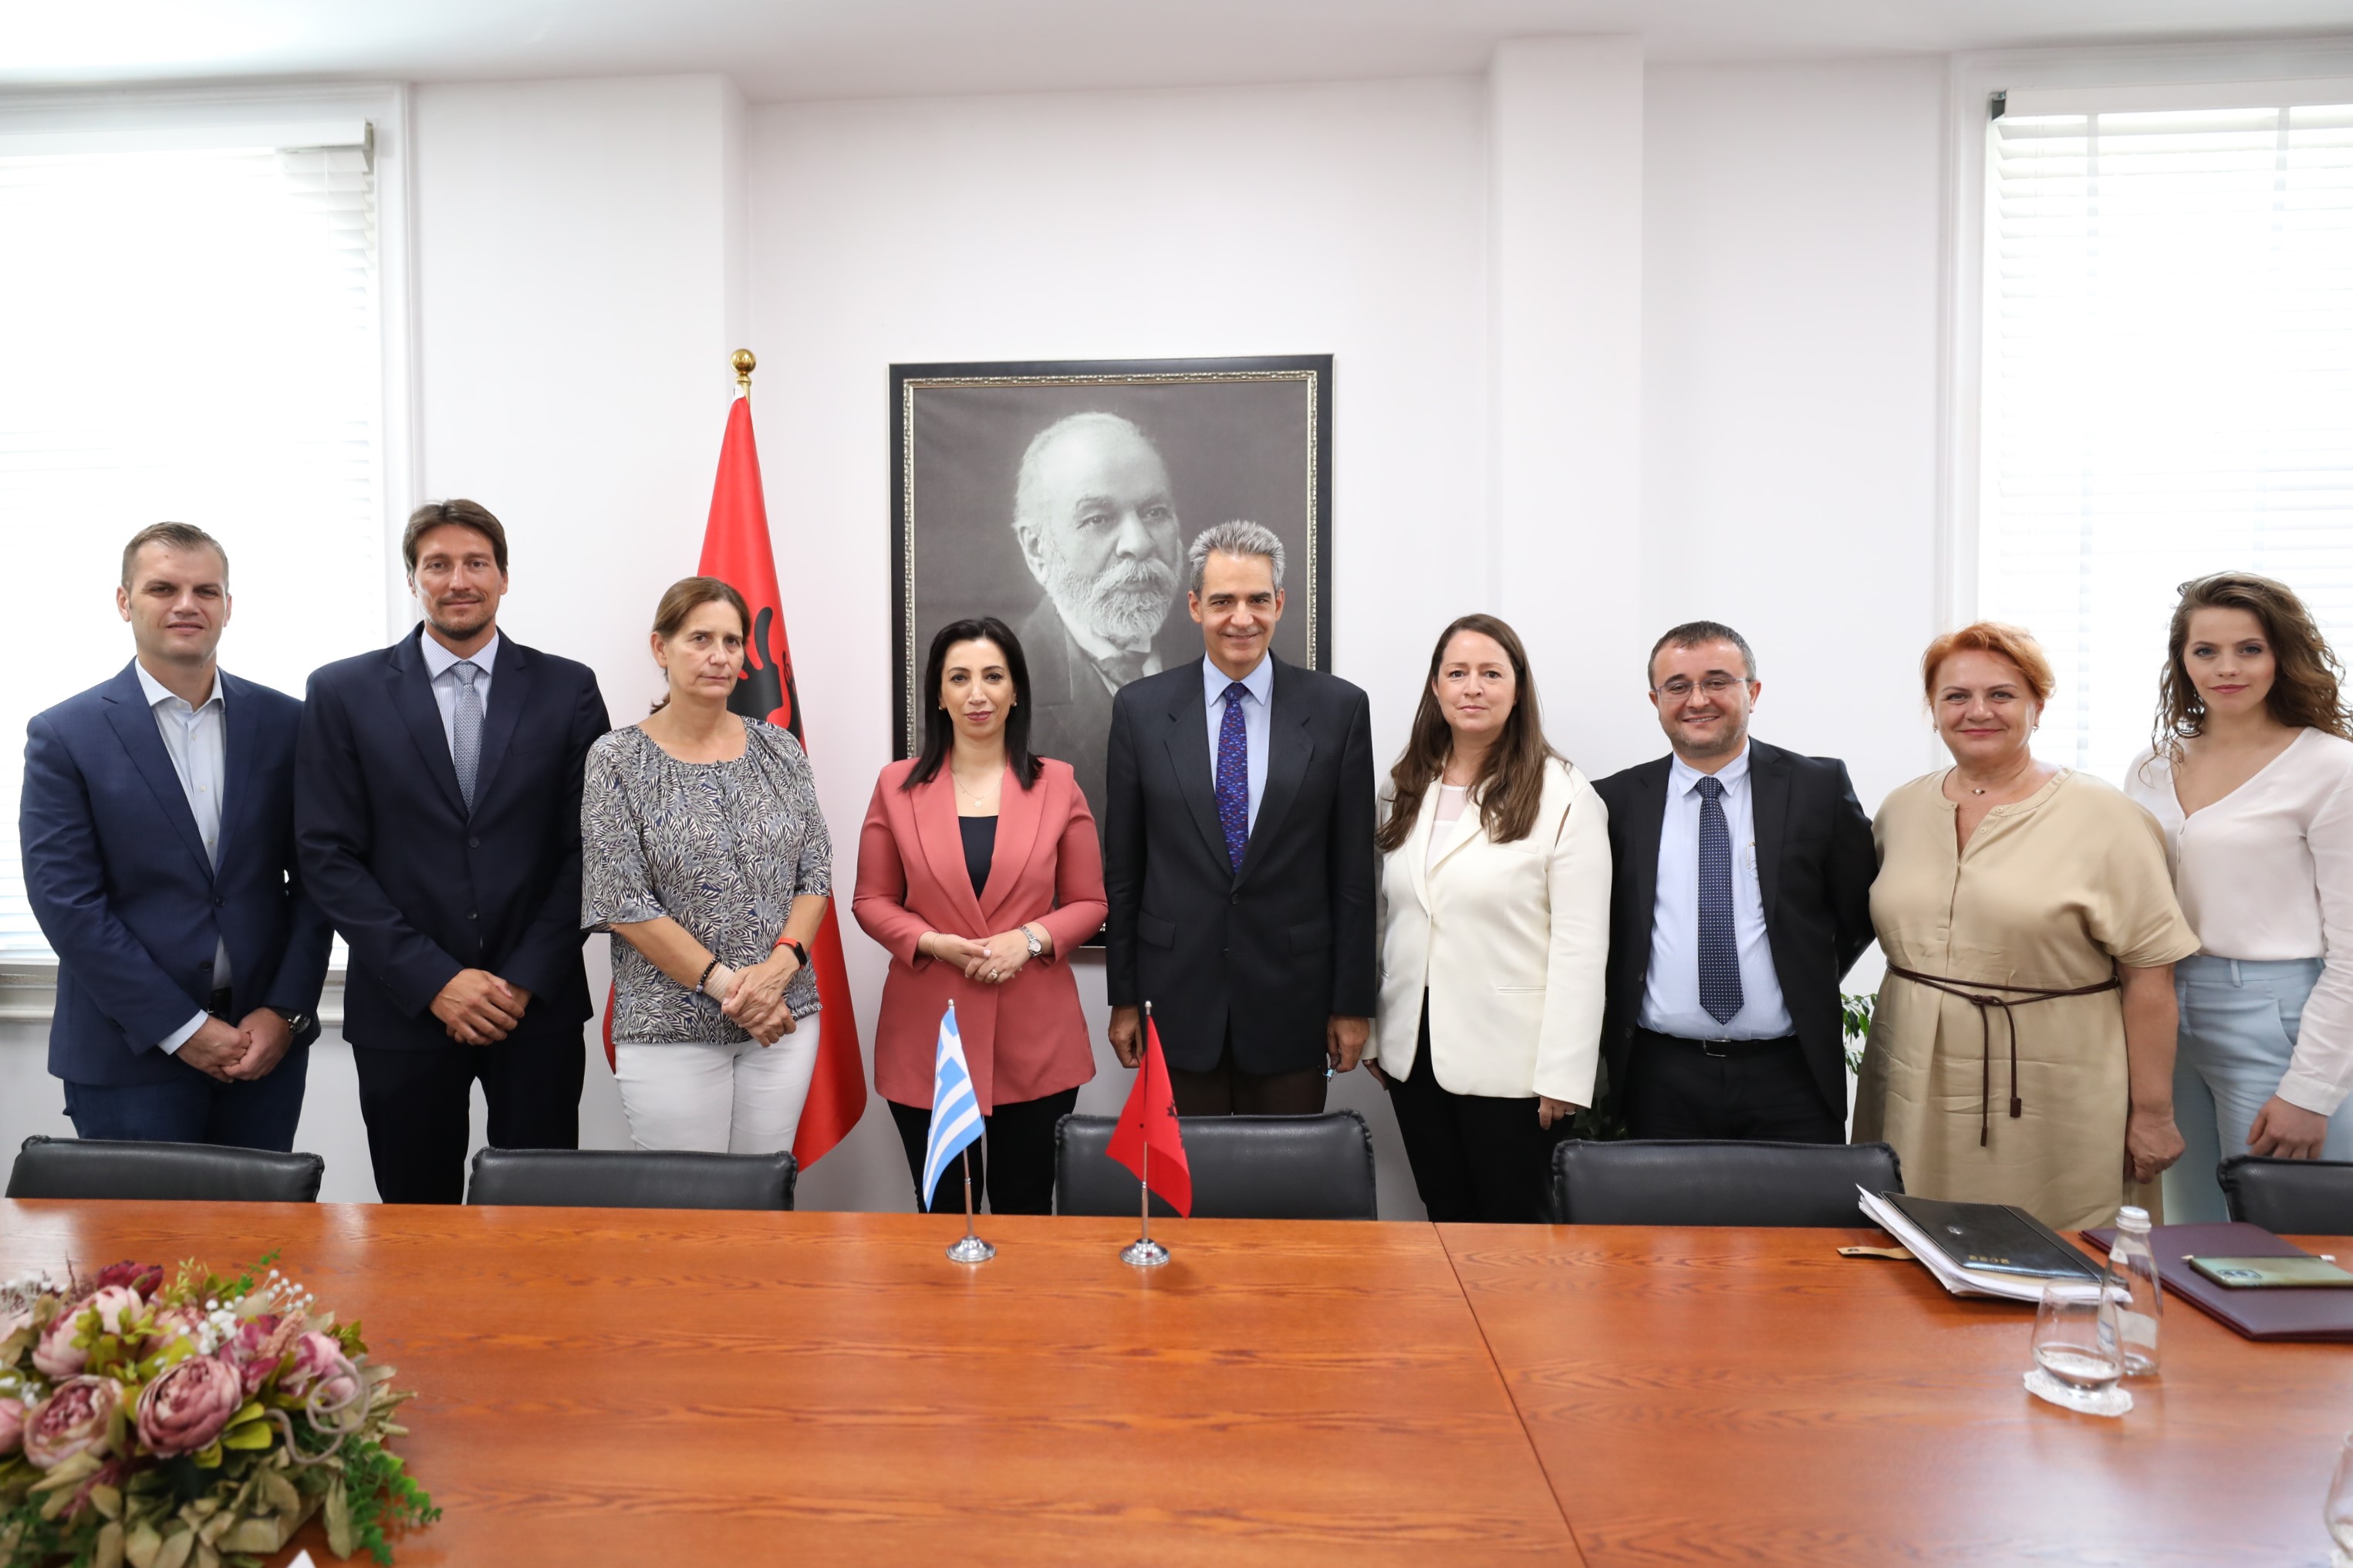  Η Αλβανία θα αναγνωρίζει τα πτυχία 4ετούς φοίτησης των Ελληνικών Πανεπιστημίων